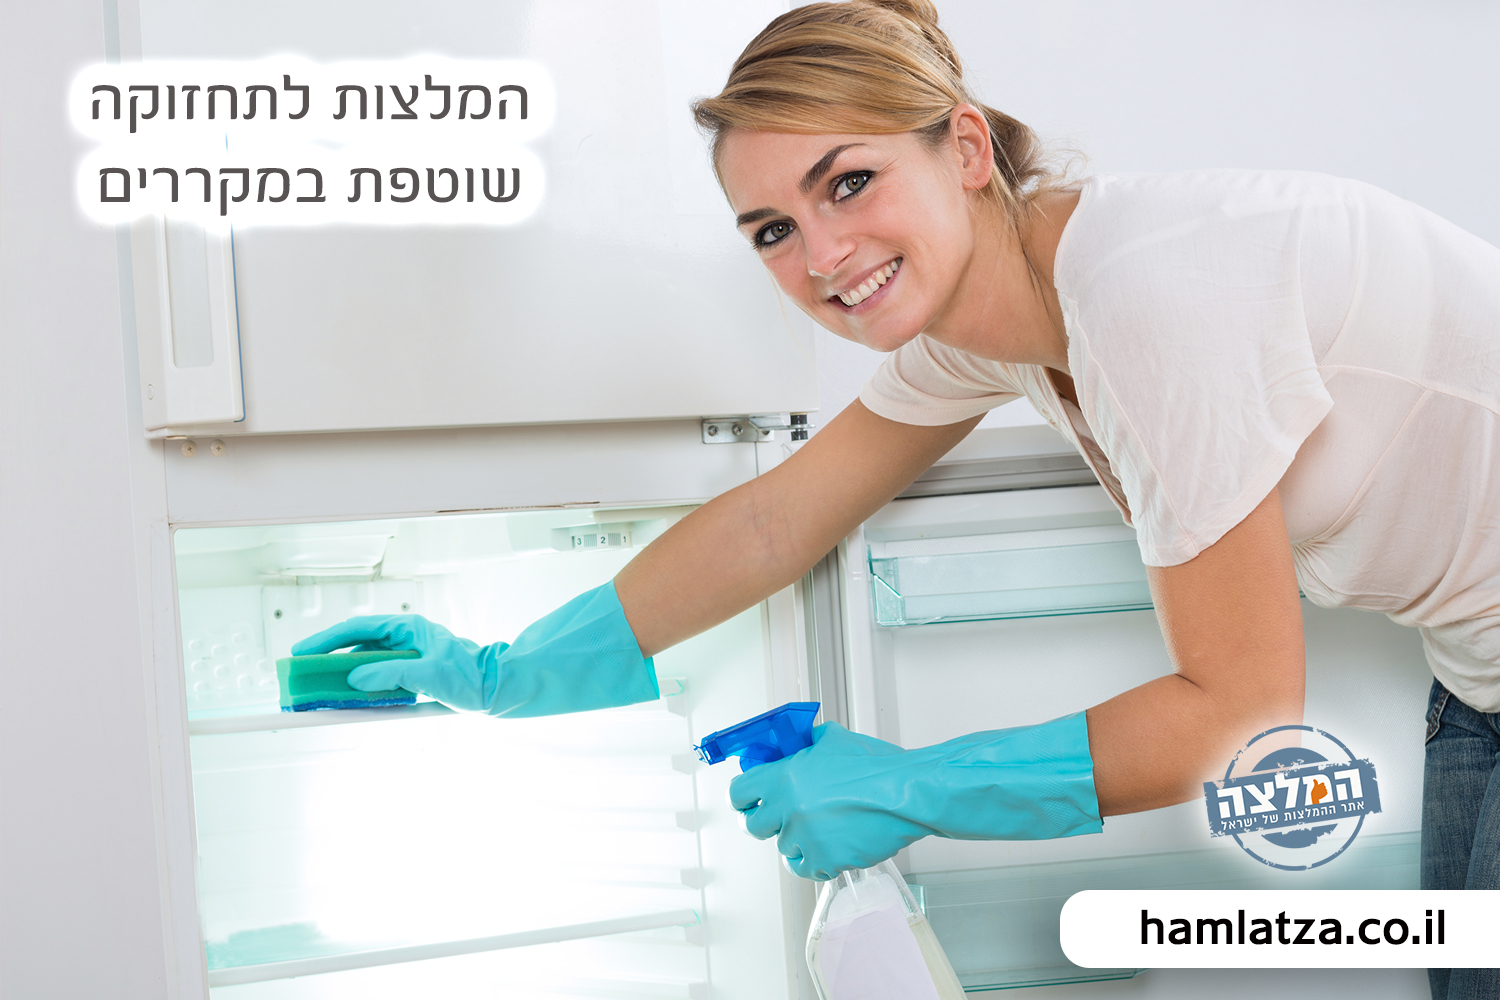 המלצות לתחזוקה שוטפת במקררים